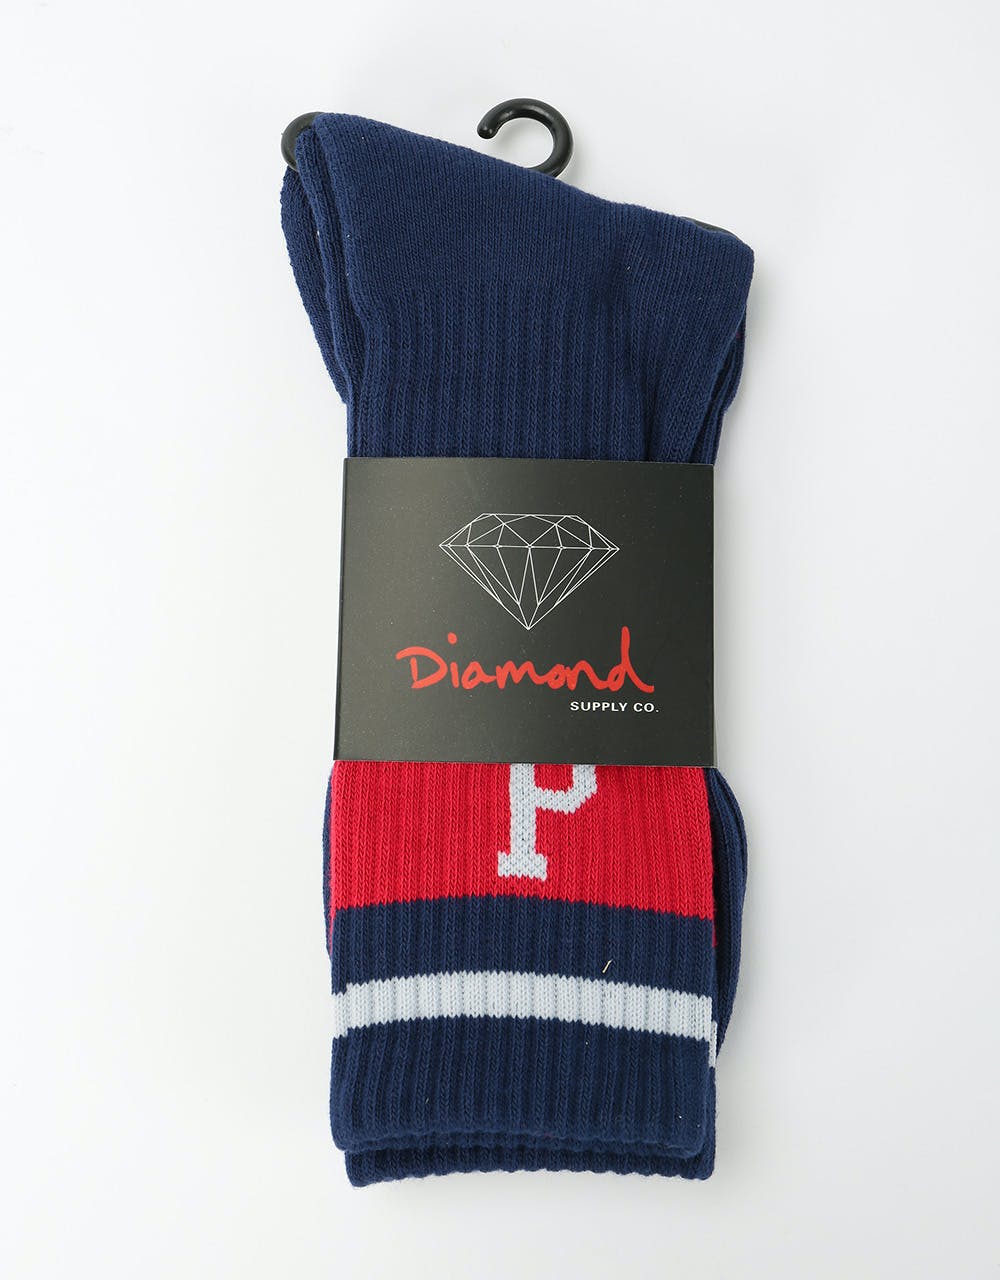 Diamond Supply Co. Un Polo Hgh Top Socks - Navy/Red